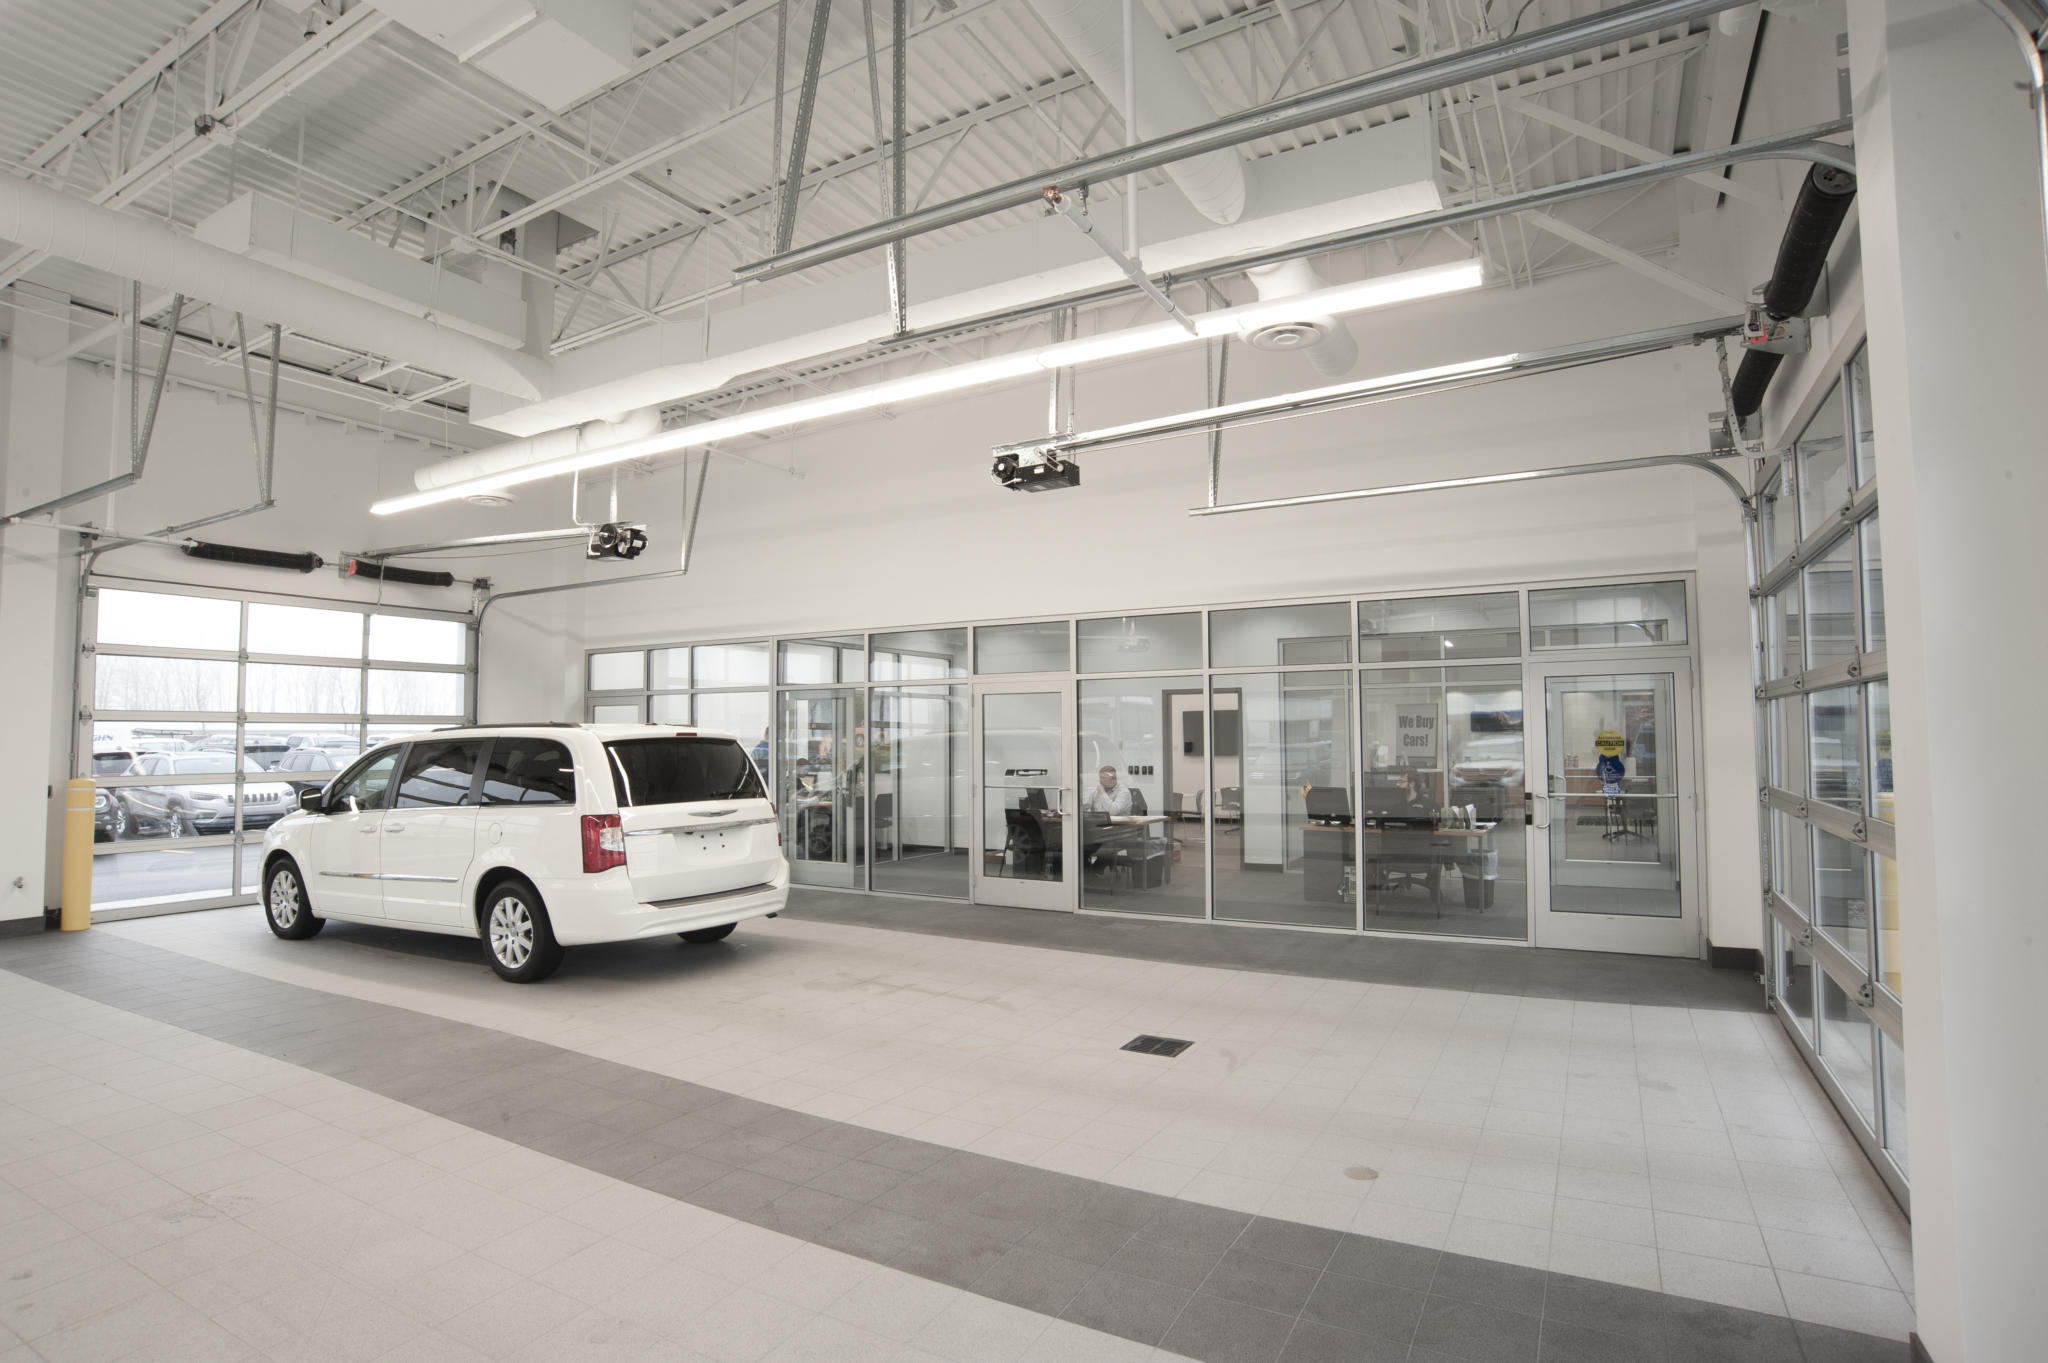 image of vehicle inside service center garage